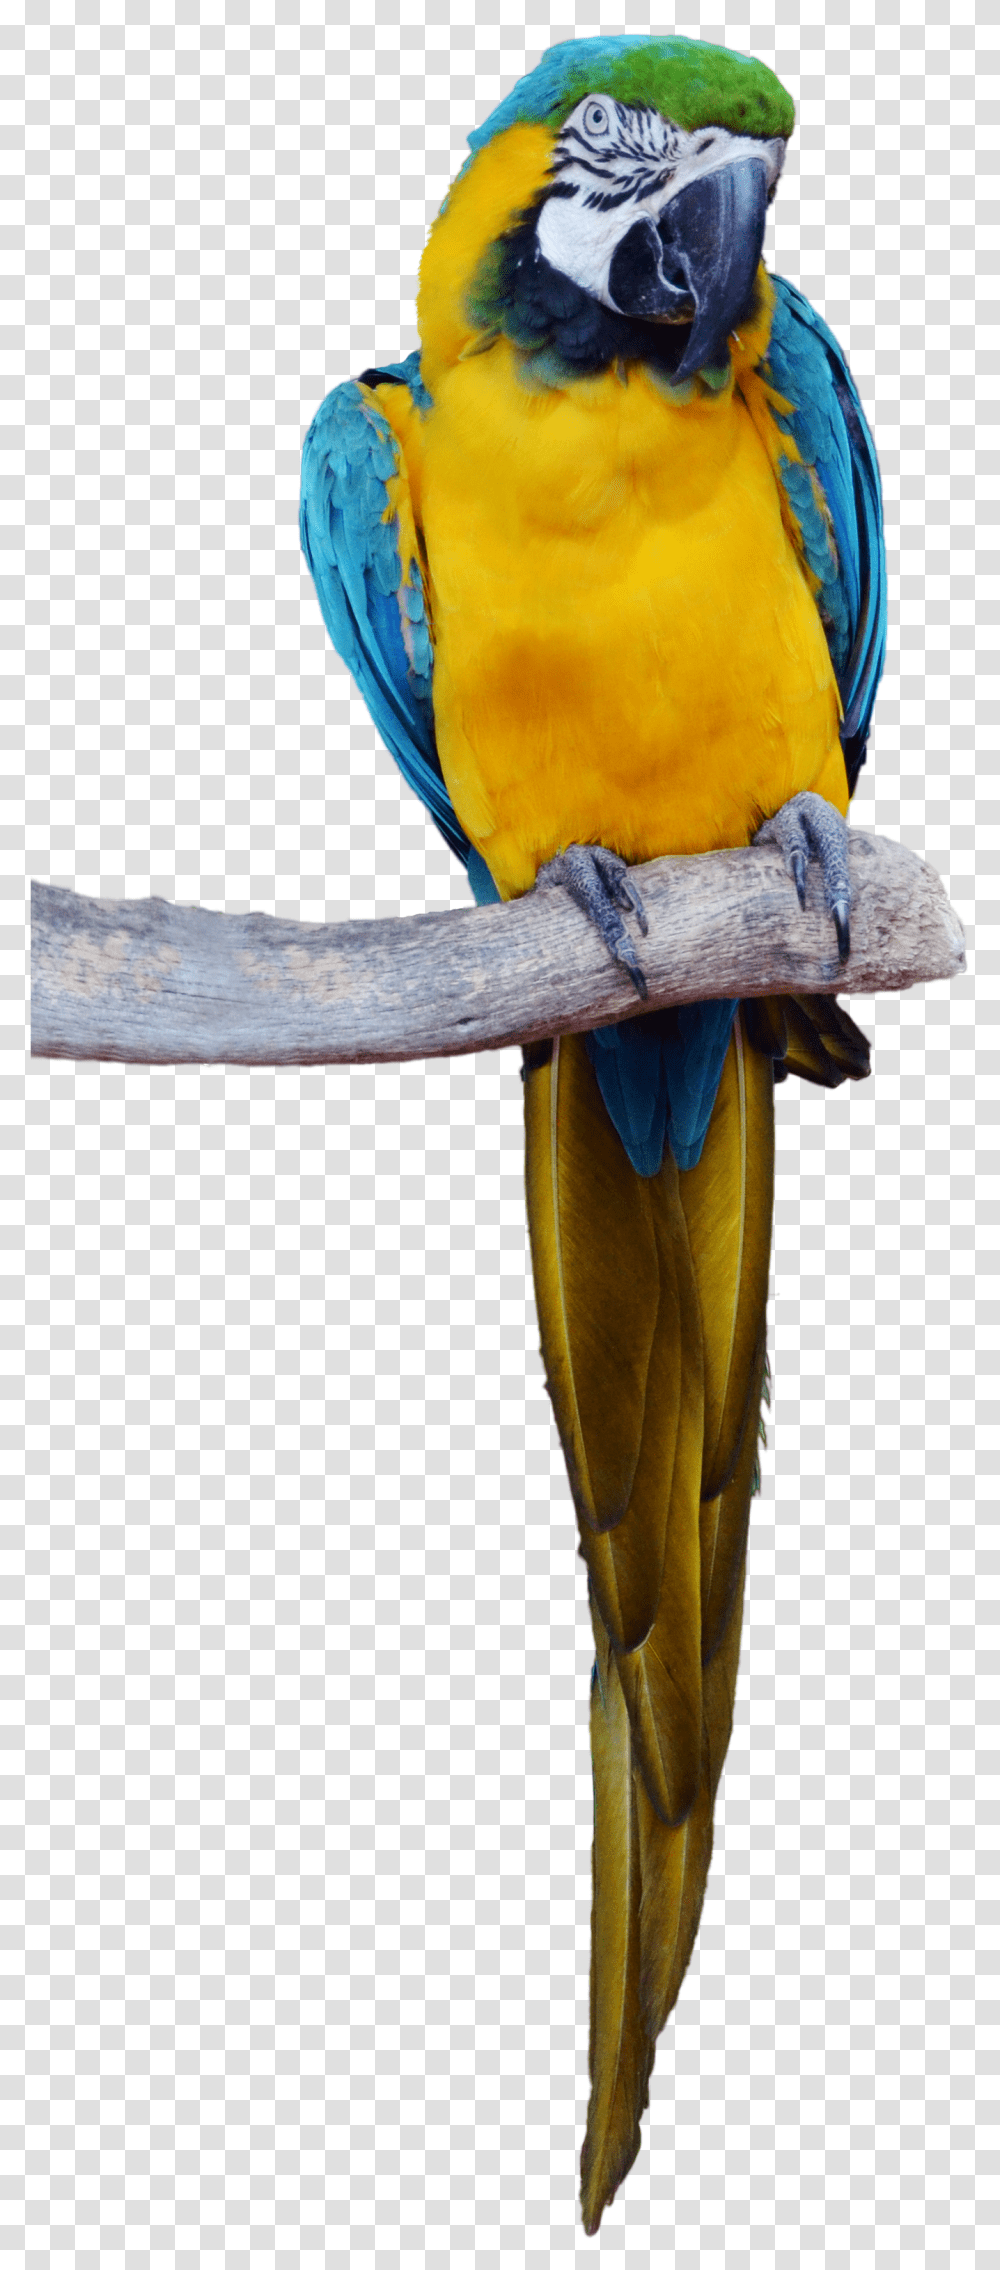 Download Parrotpngtransparentimagestransparent Tropical Bird, Macaw, Animal Transparent Png